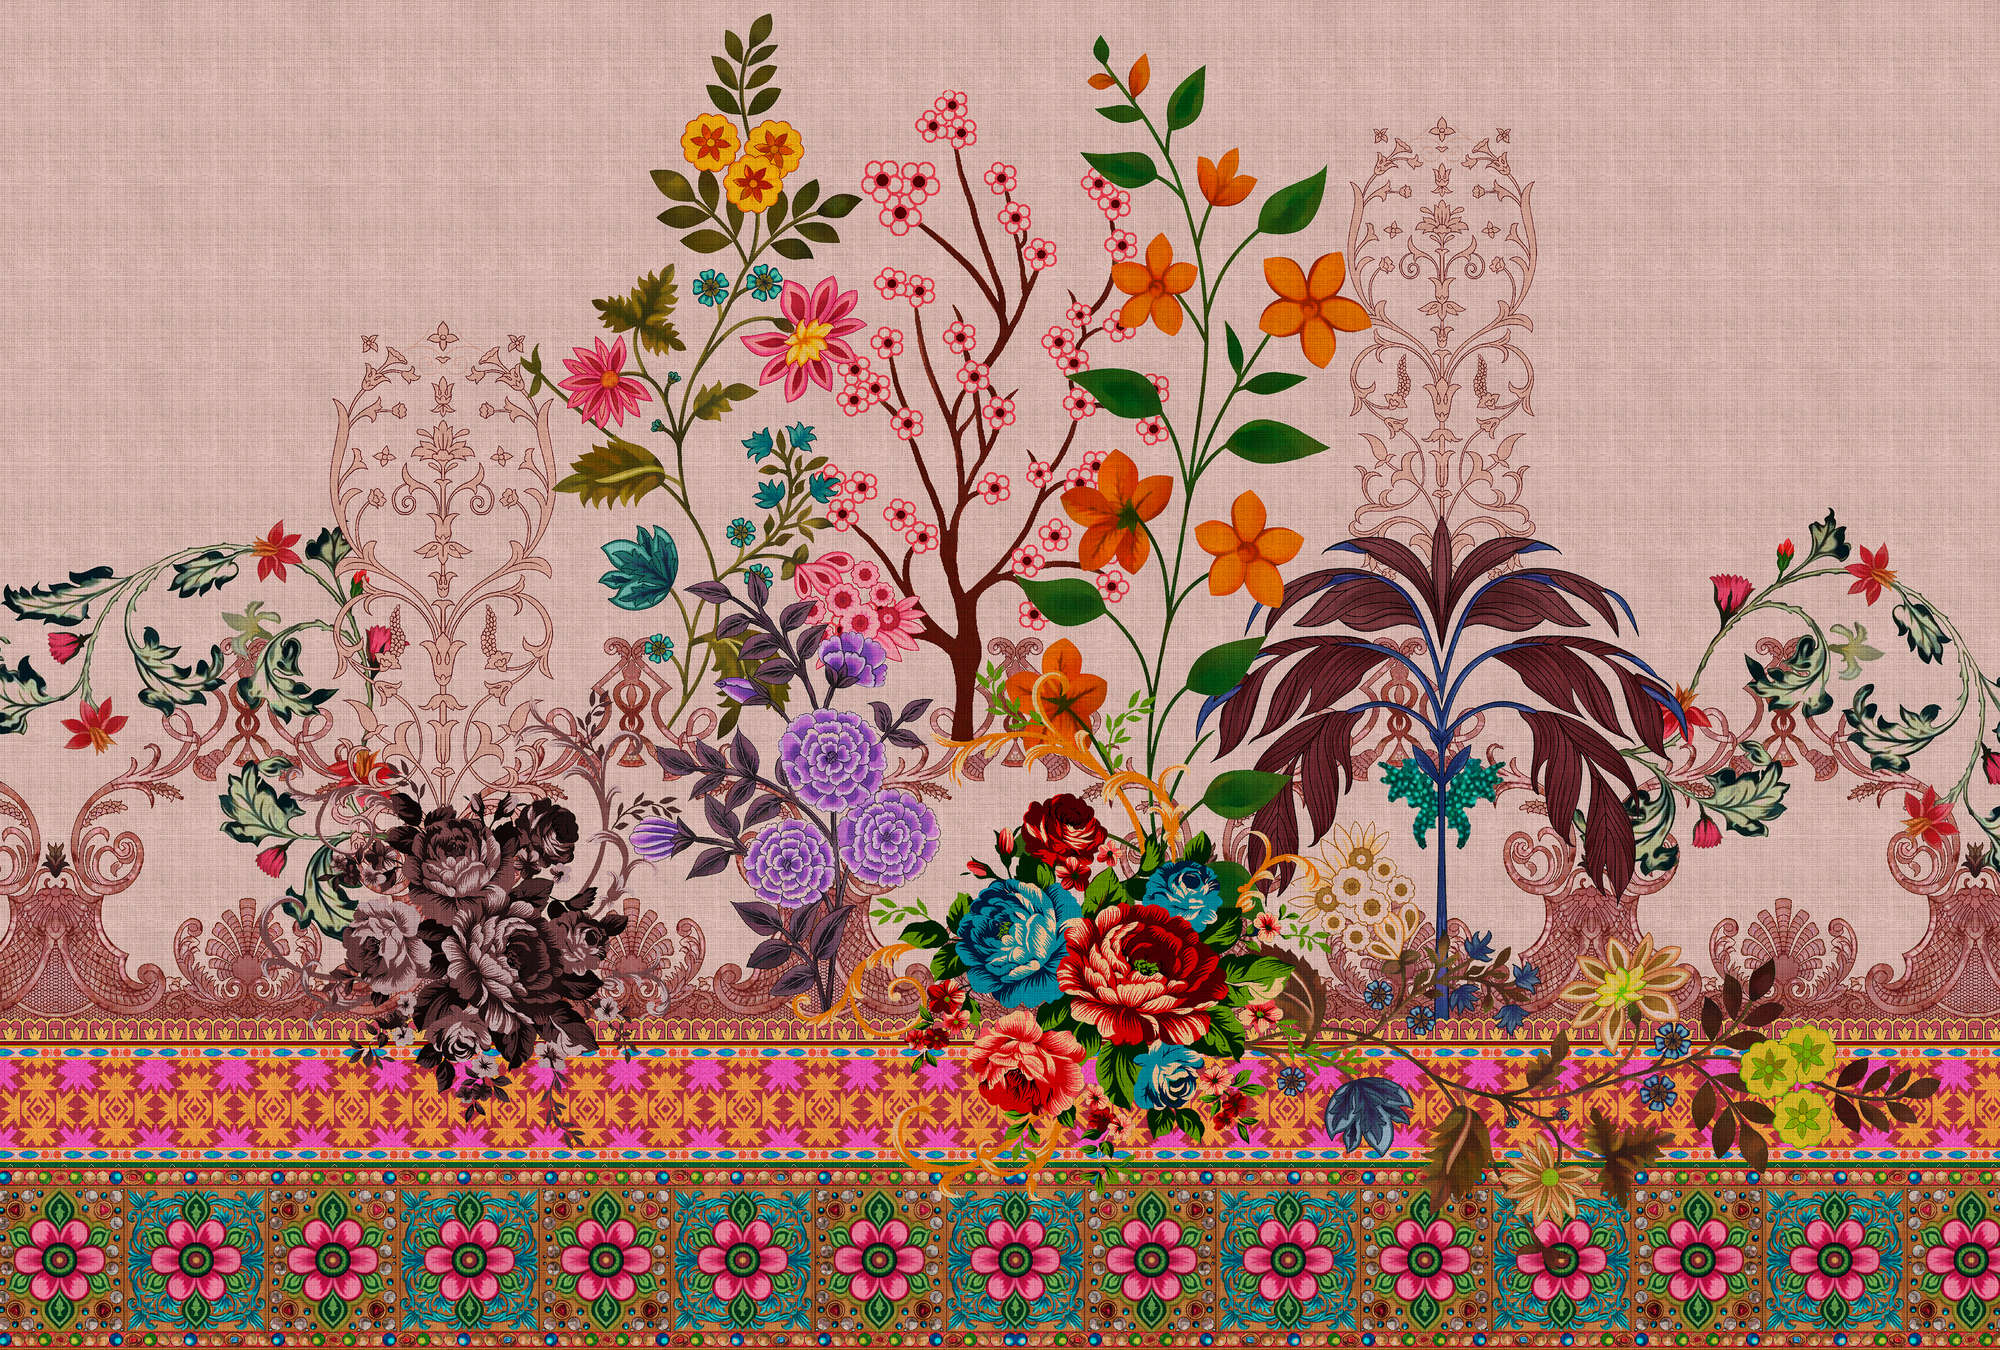             Oriental Garden 4 - flowers mural flowers & borders pattern
        